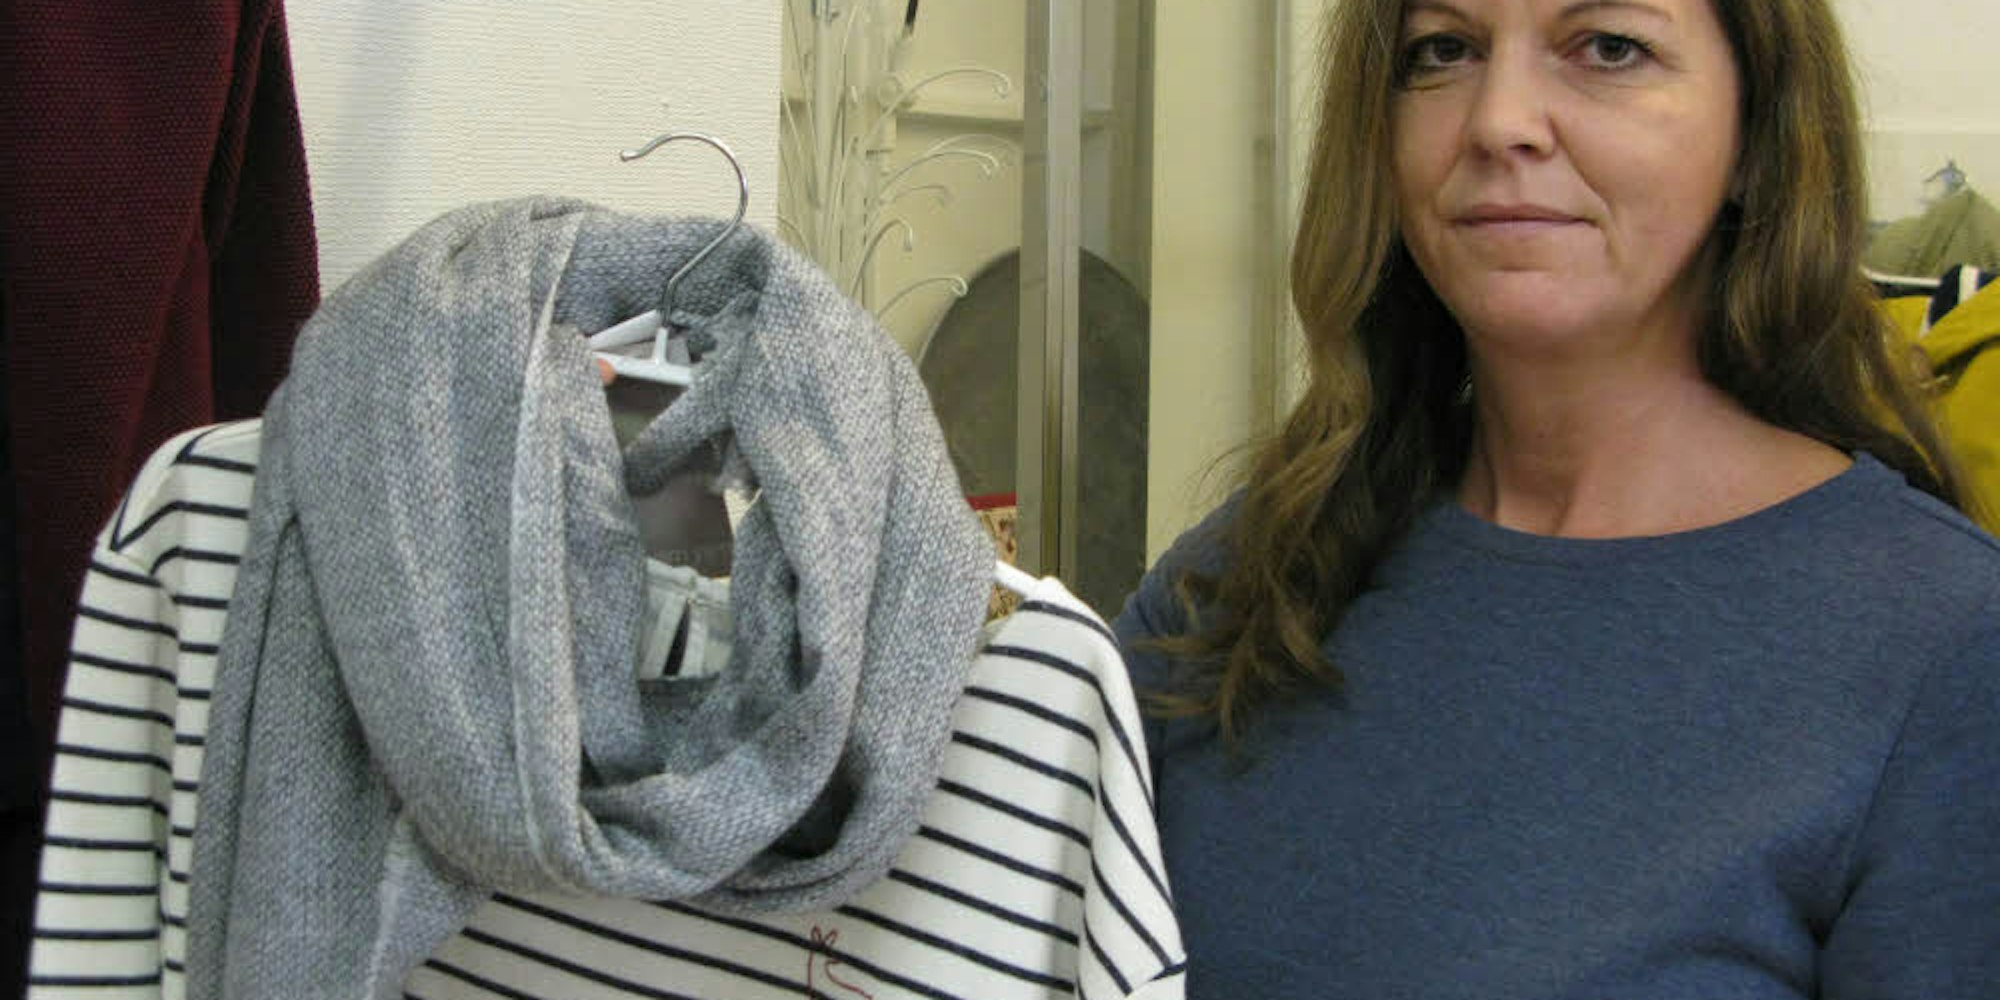 Mira Gorschlüter achtet in ihrem Laden darauf, dass die Kleidung unter menschenwürdigen Bedingungen produziert wird. Schick soll sie außerdem sein.